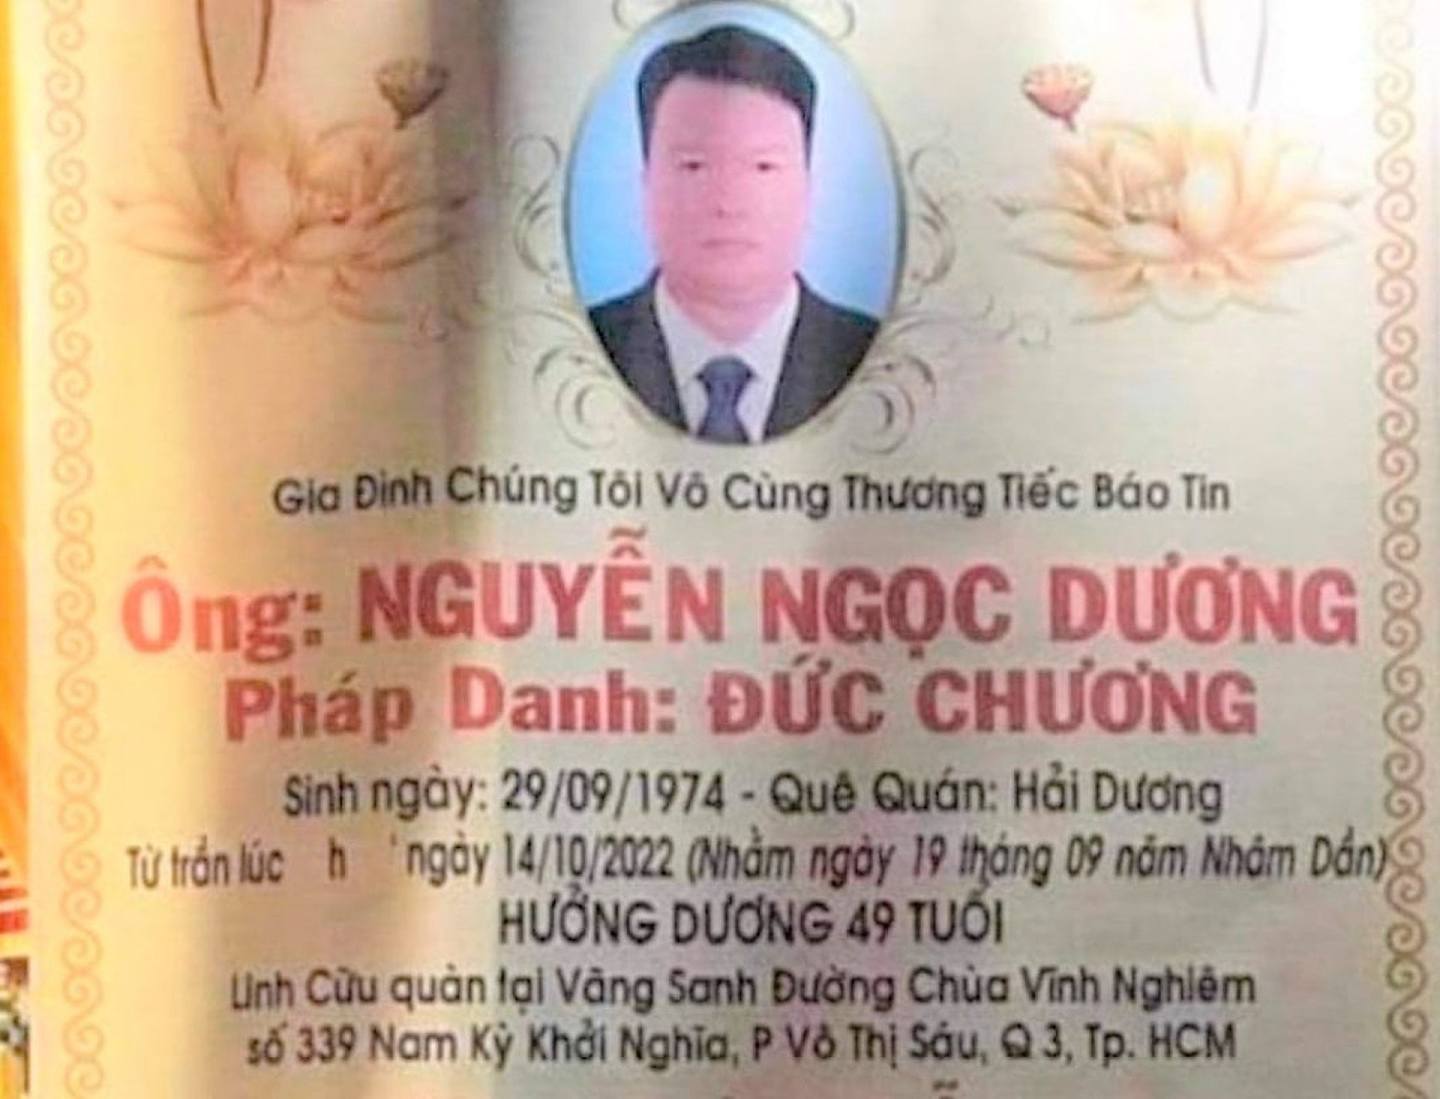 張美蘭公司旗下地產公司高層阮玉陽（Nguyen Ngoc Duong）亦在同月14日疑跳樓自殺身亡，更留有遺書。有越南報章更刊登疑為阮玉陽的訃告及遺書。（Nguoi Viet News）